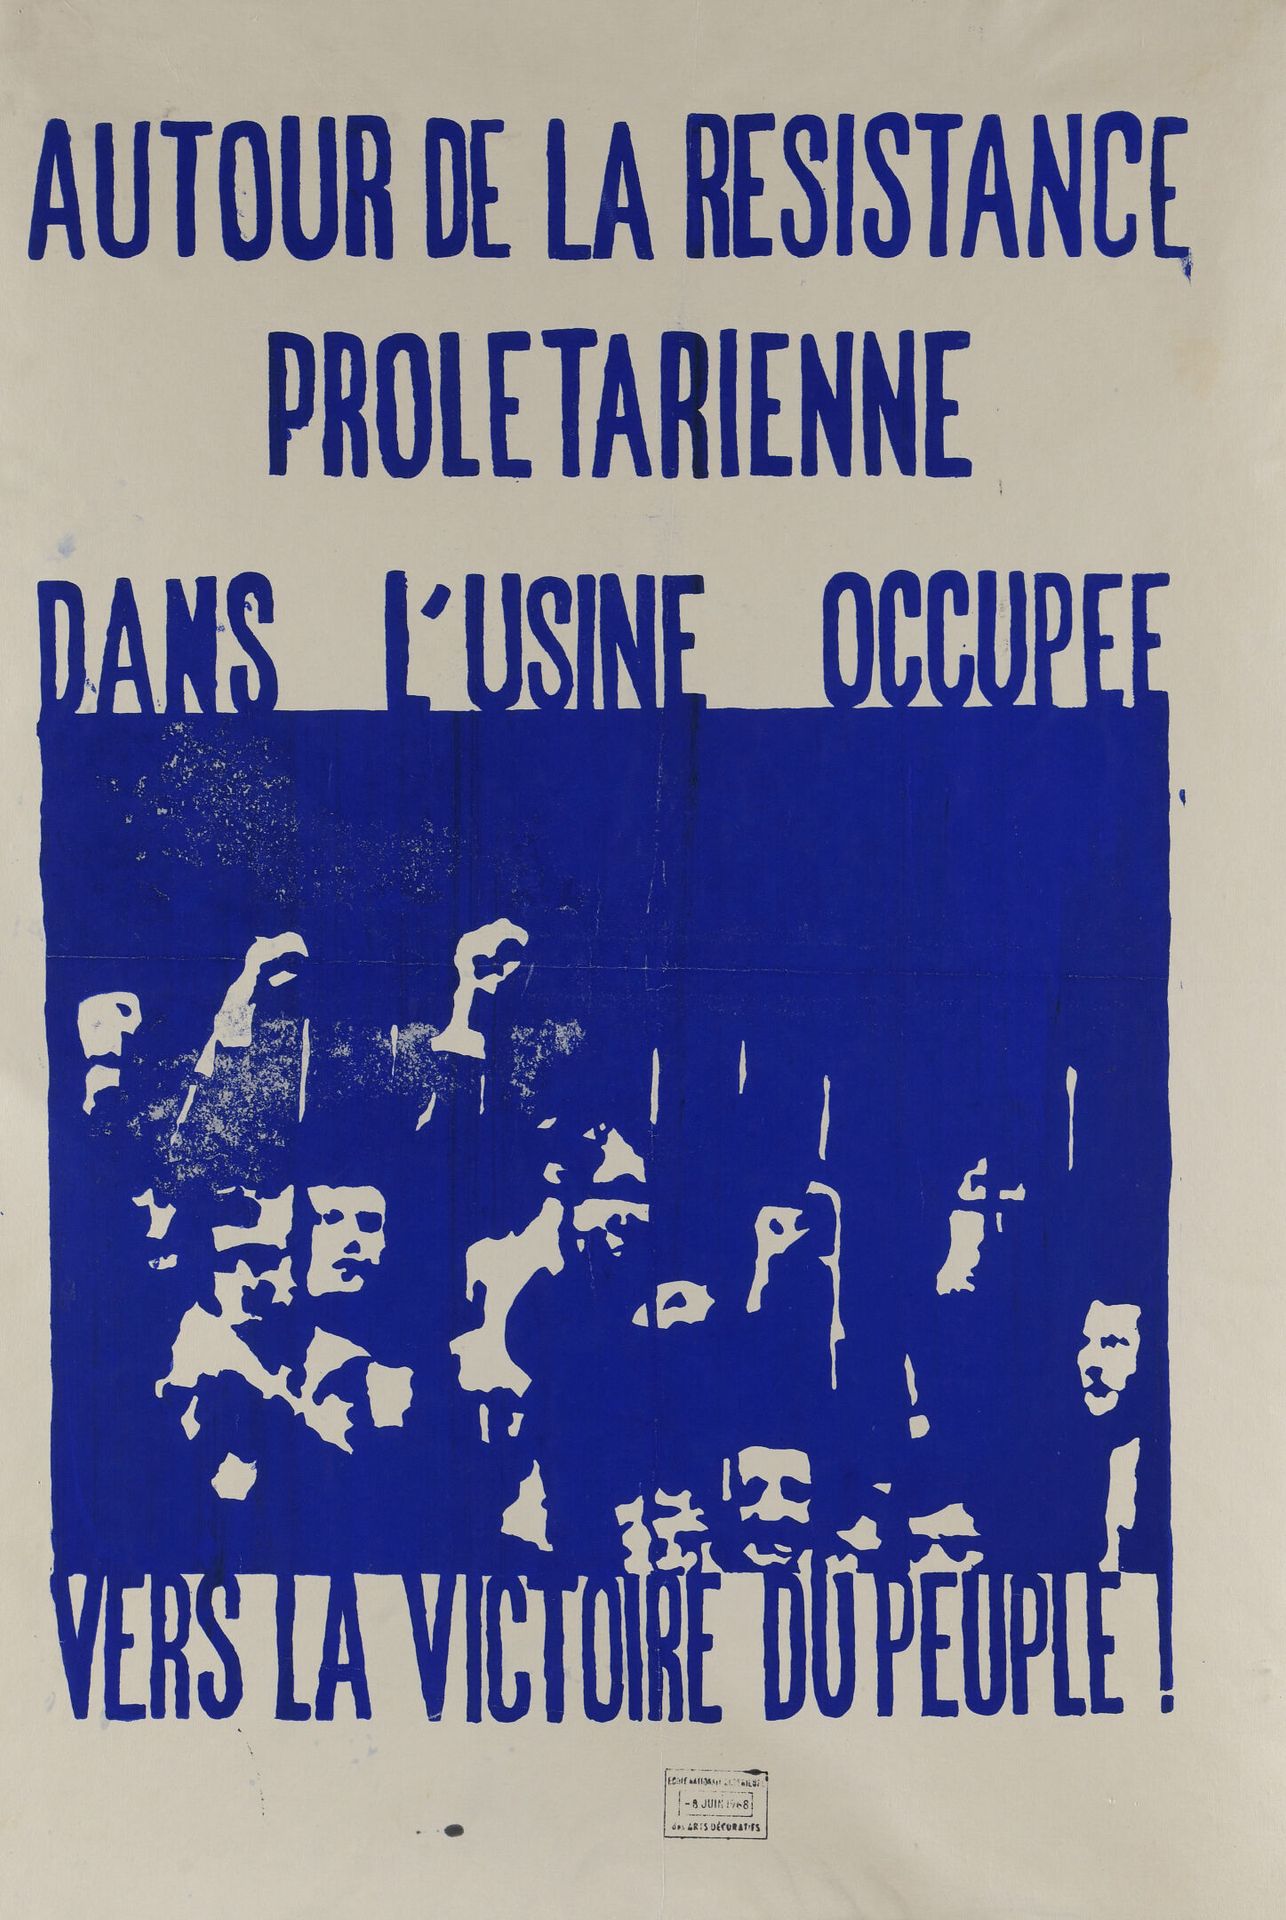 Null [Manifesto del maggio 1968]

Scuola di Arti Decorative

Intorno alla resist&hellip;